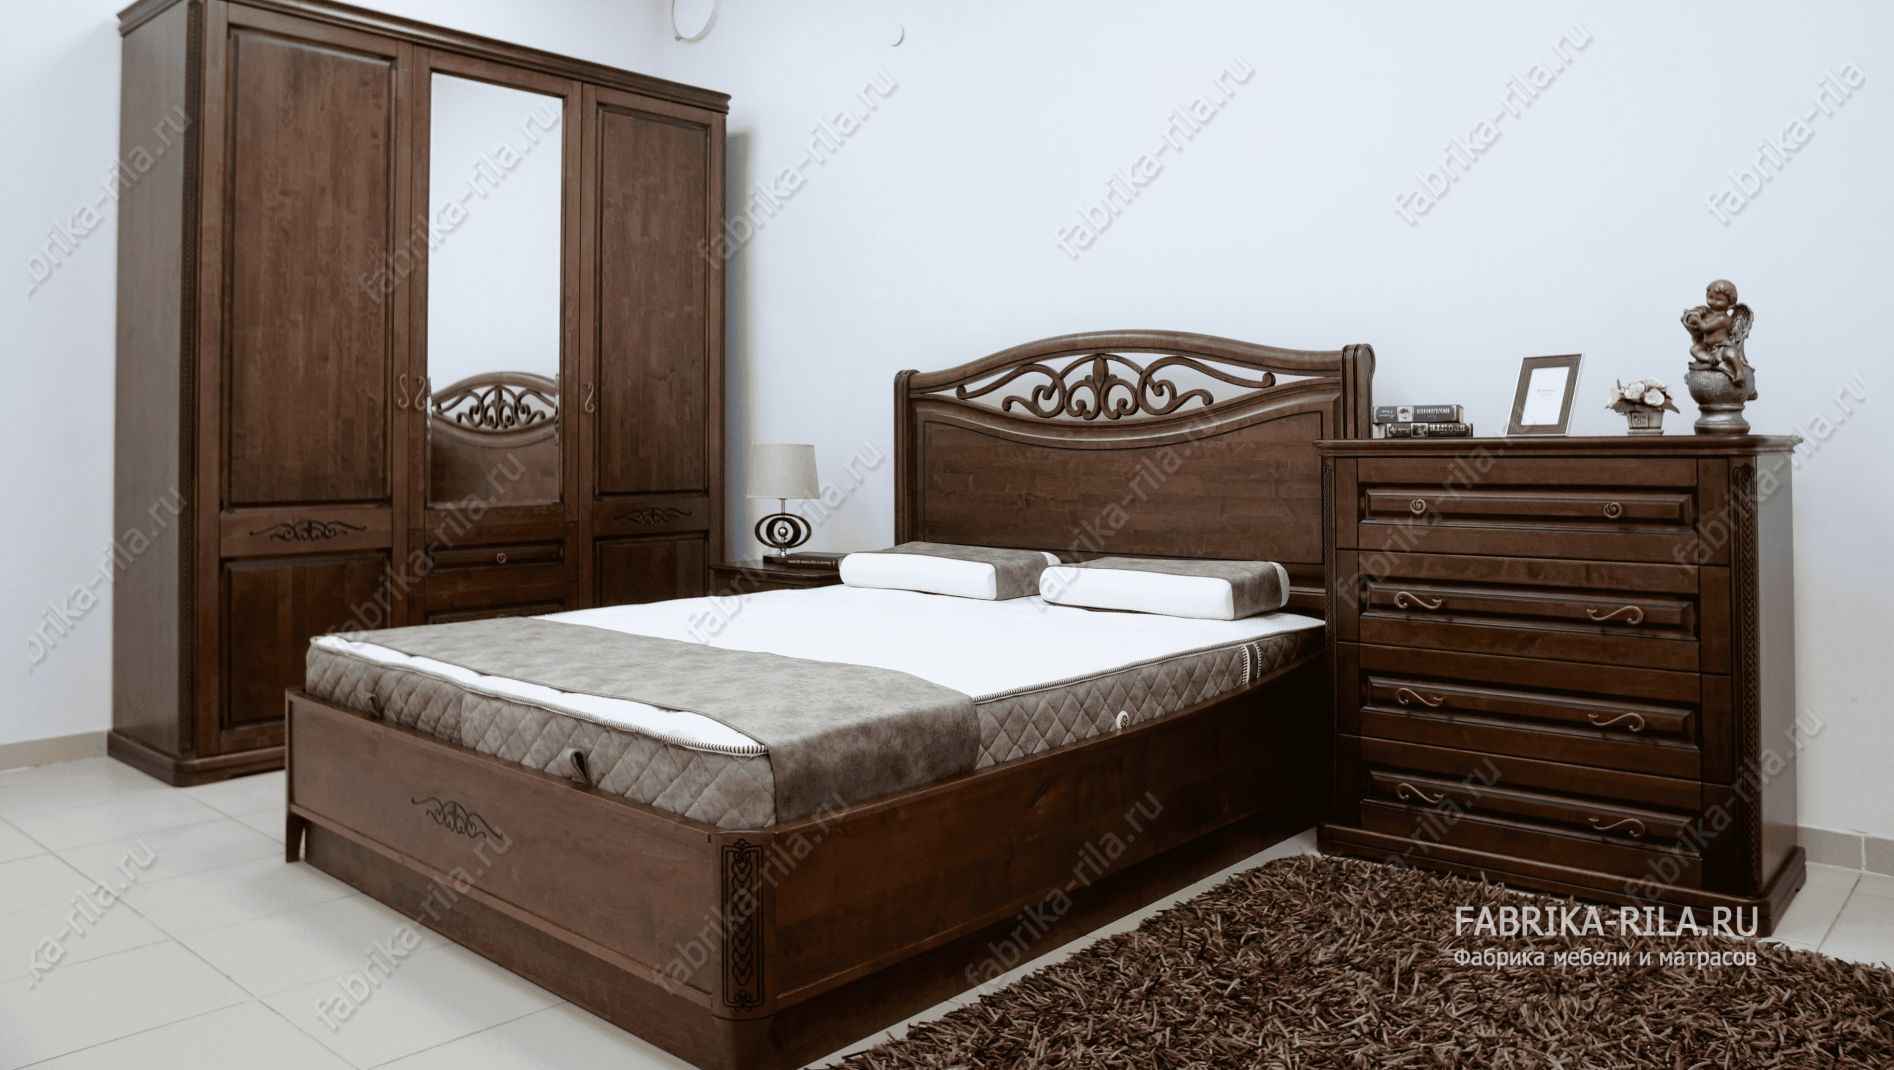 Кровать Plaza-2 — 120x190 см. из дуба